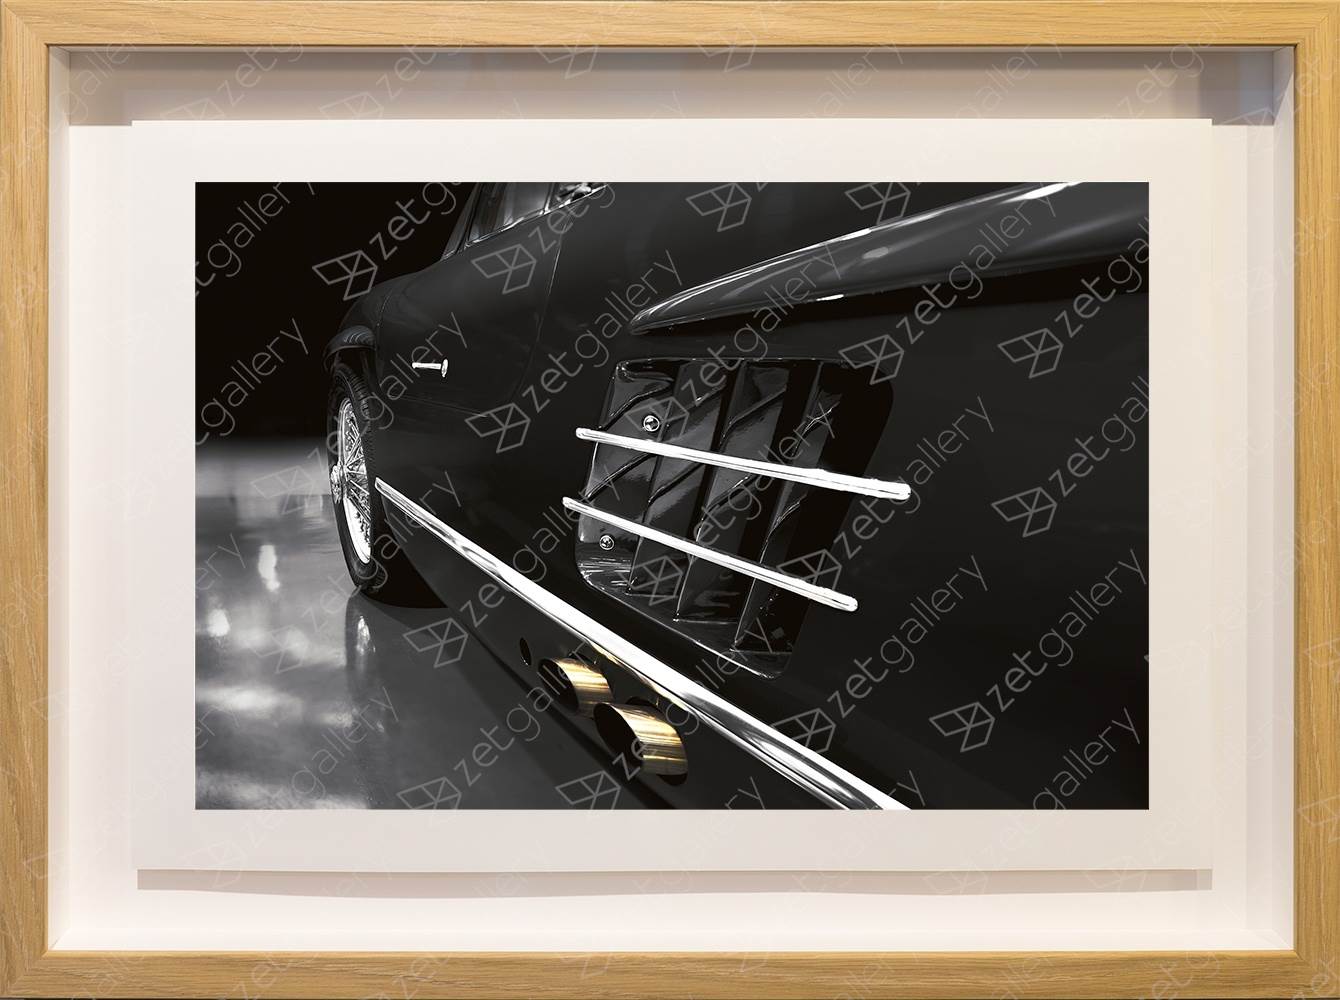 Mercedes-Benz 300SL Gullwing 01, original Avant-Garde Digital Photography by Yggdrasil Art